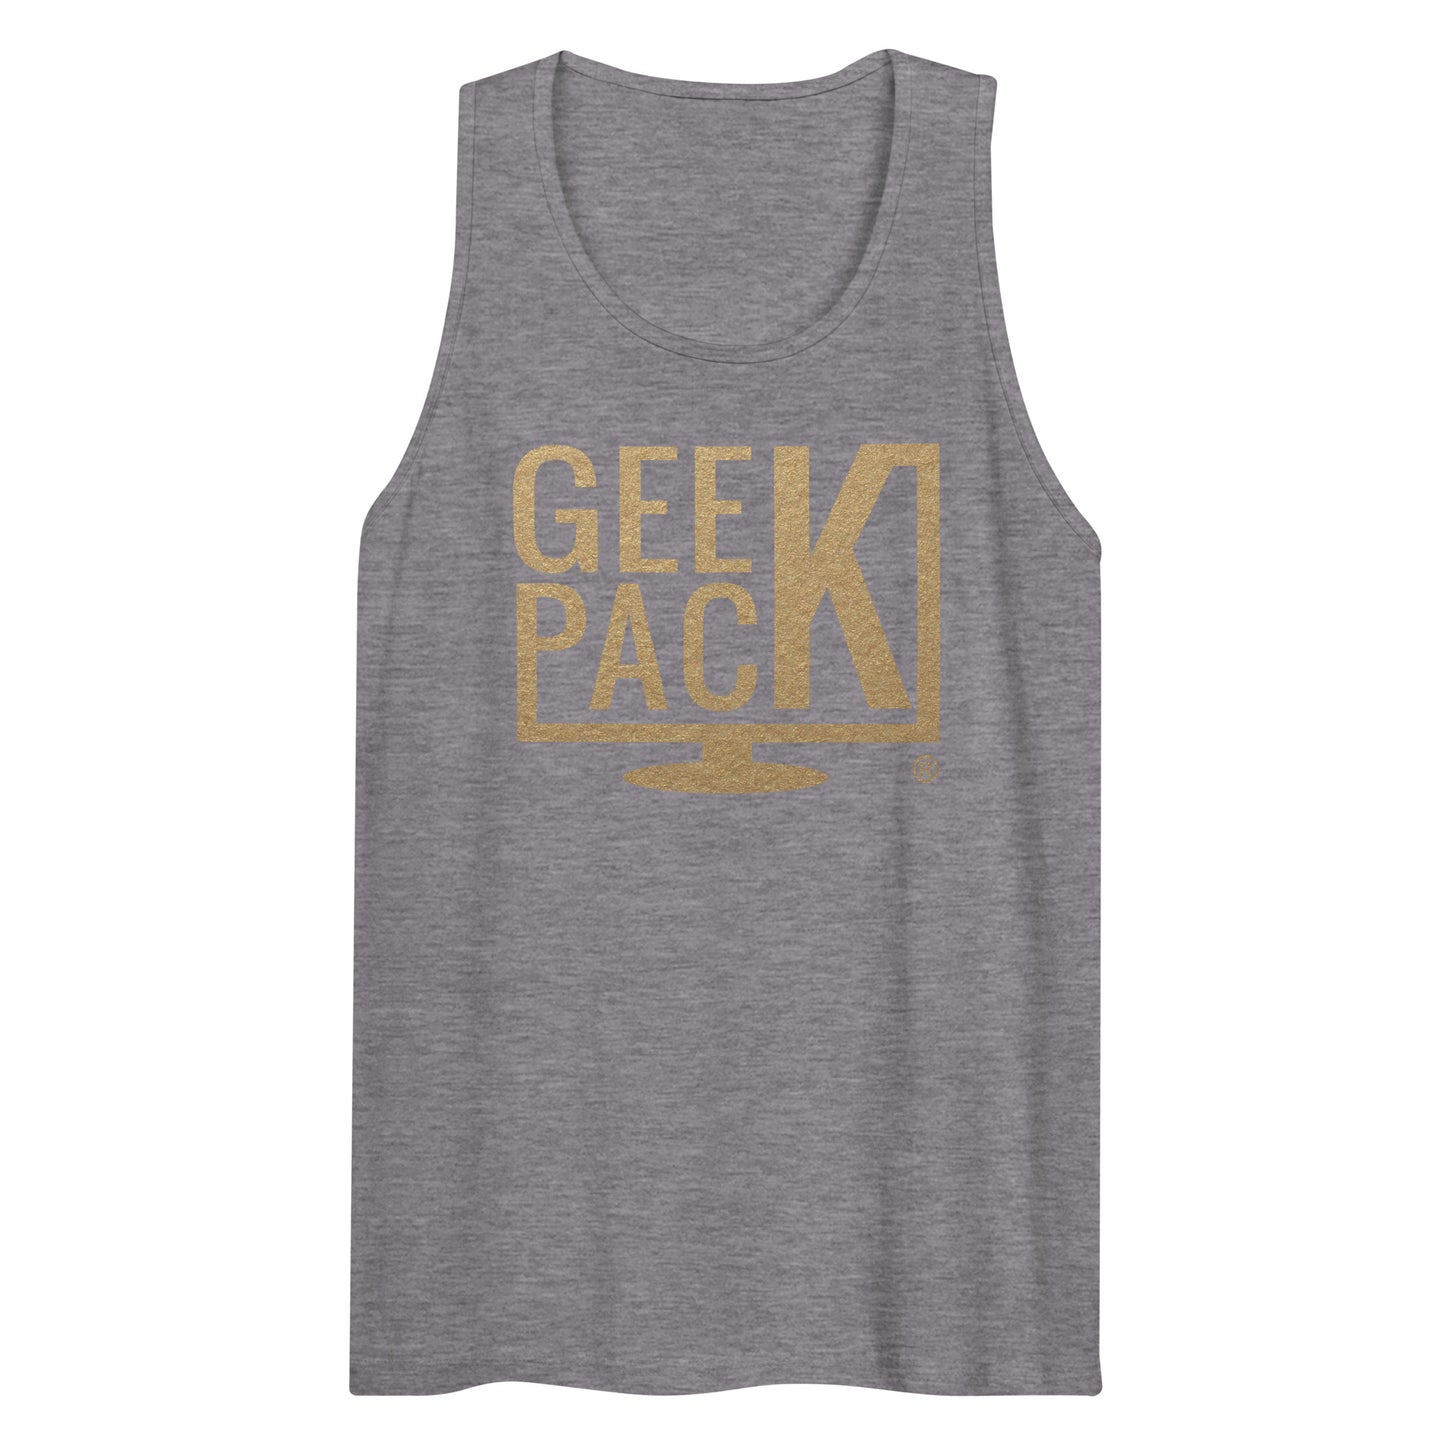 GeekPack® Men’s Premium Tank Top